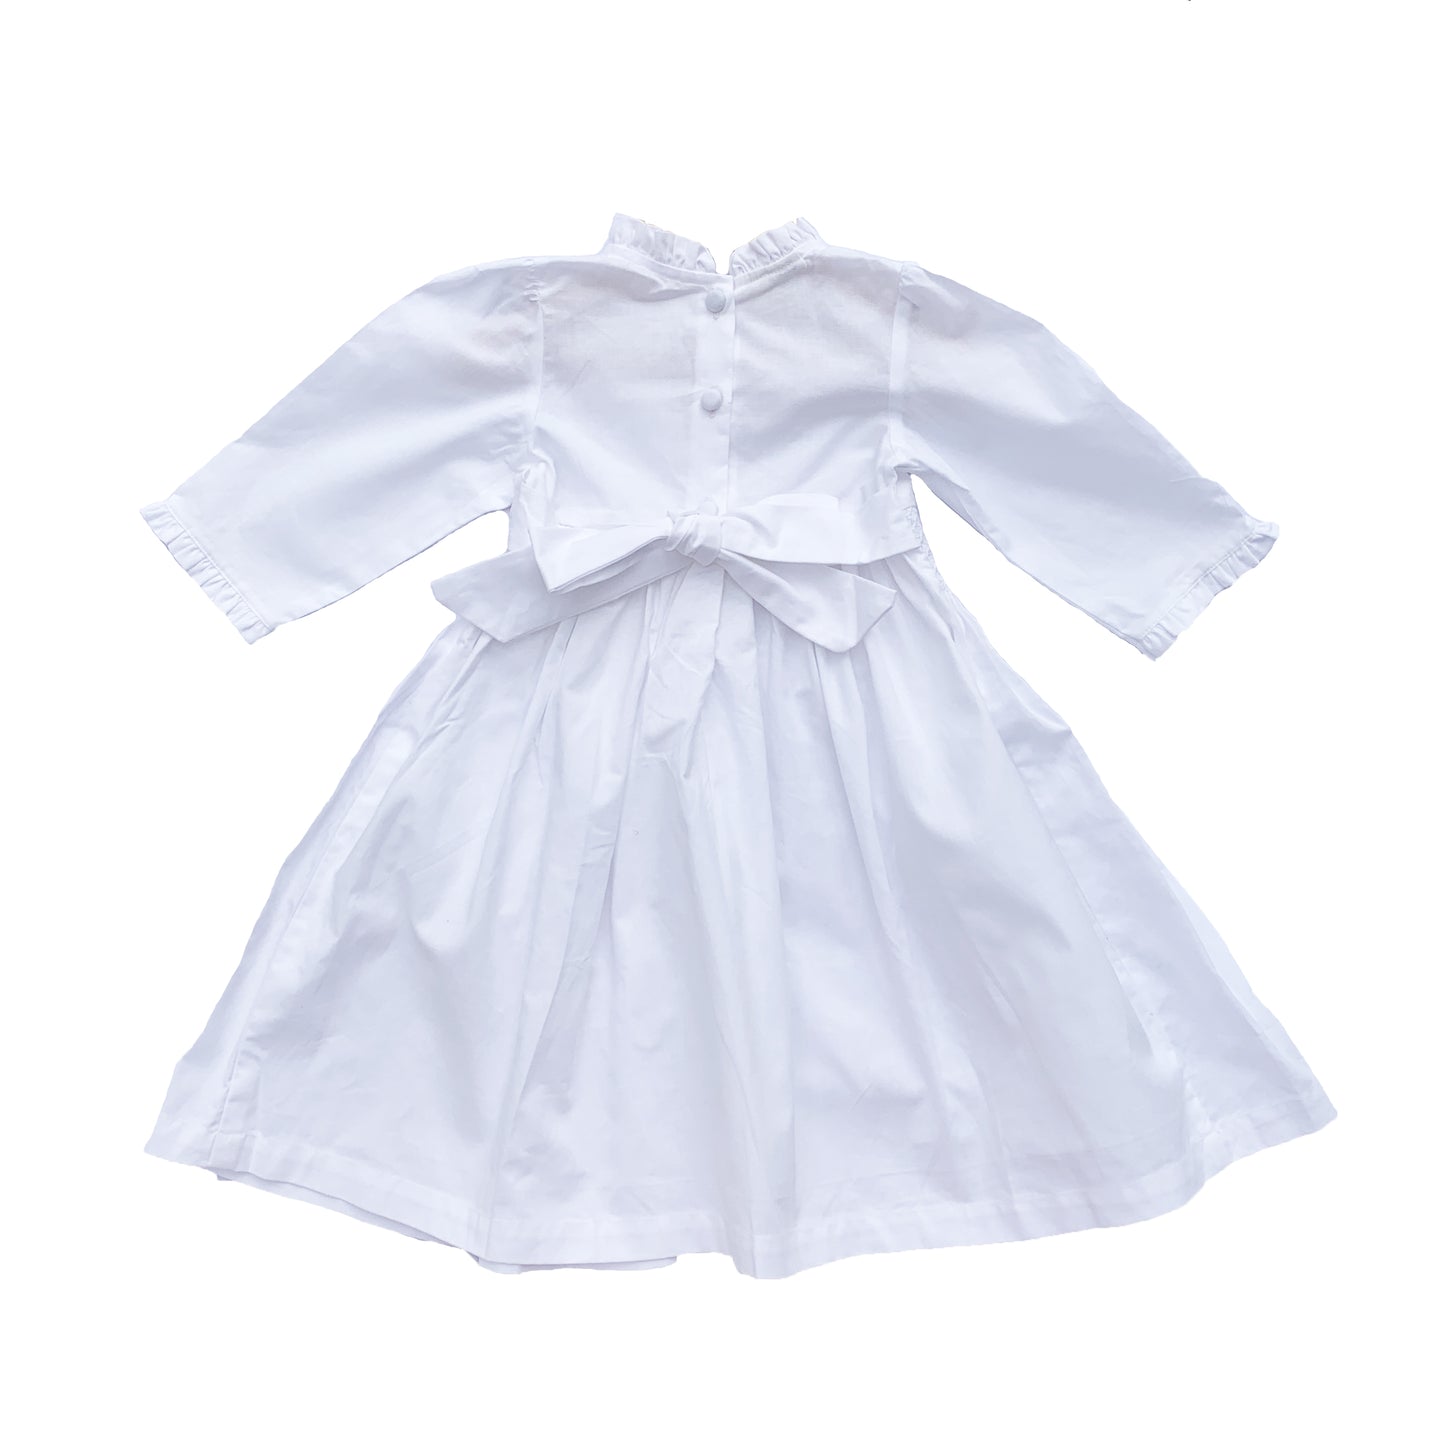 White Smocked Dress - Christening / Flower Girl